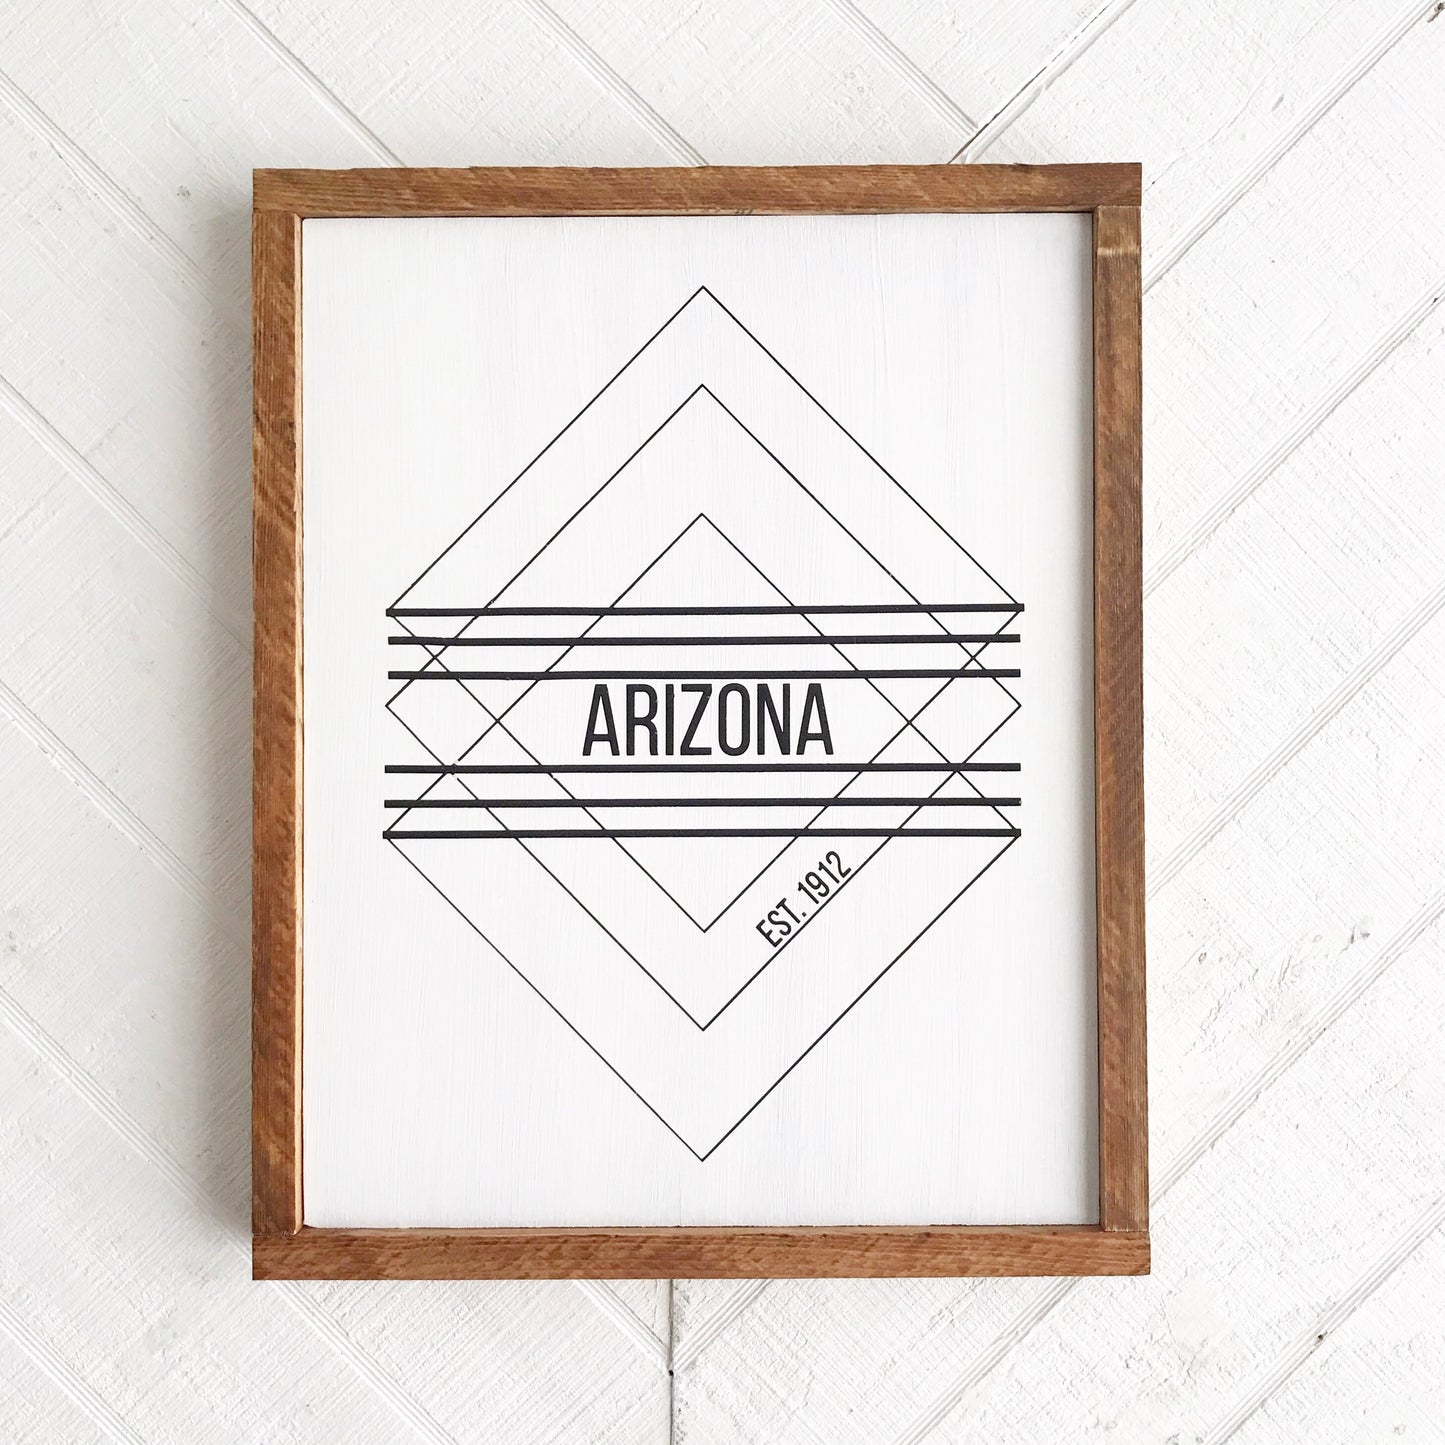 Arizona 1912 Wood Sign